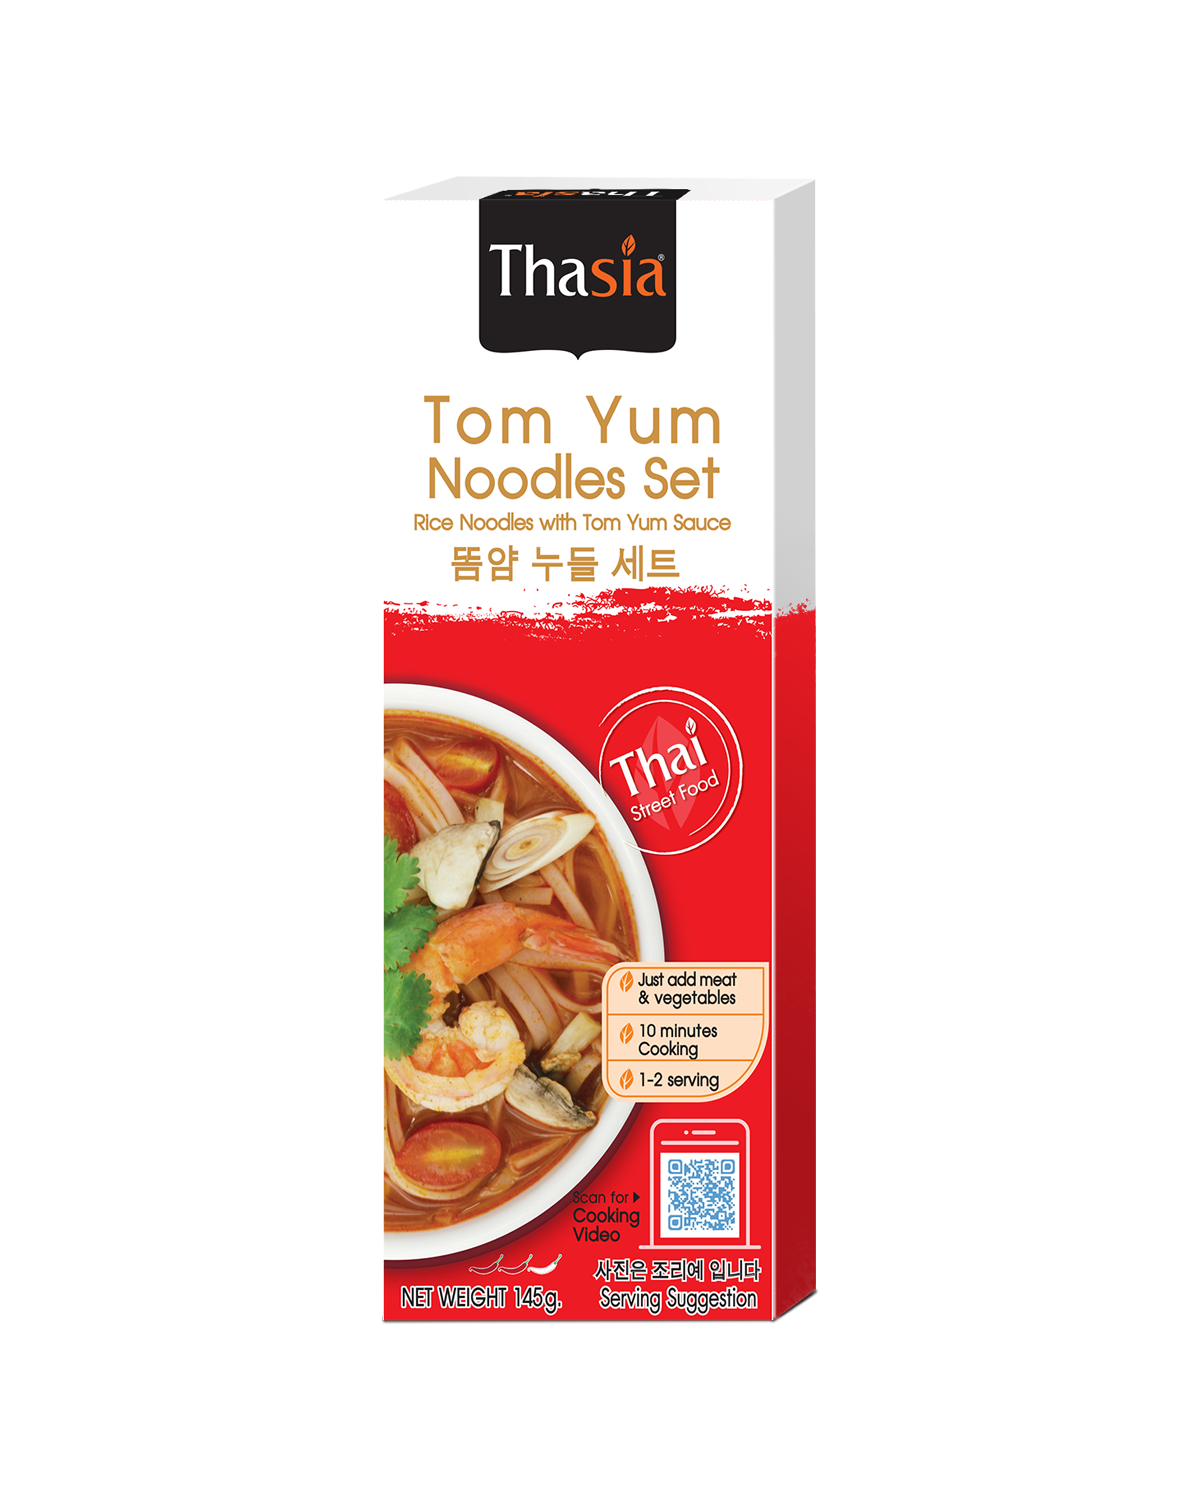 Tom Yum Noodles Set